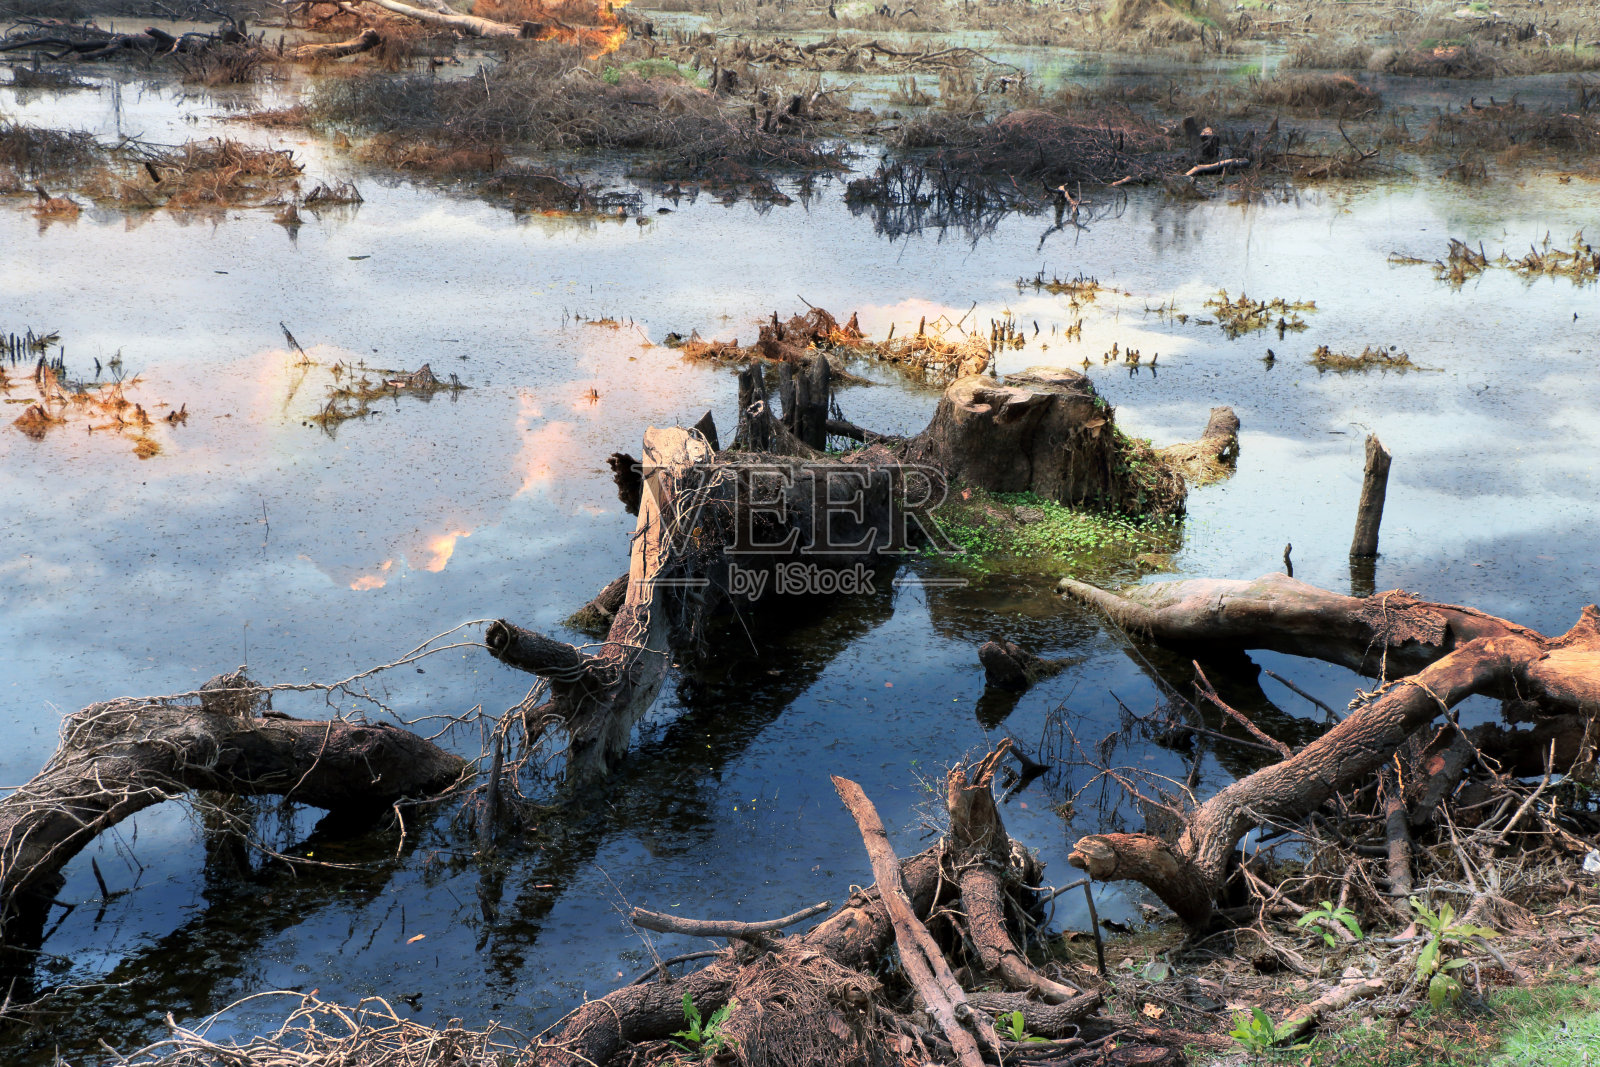 森林砍伐景观-生态与环境问题照片摄影图片